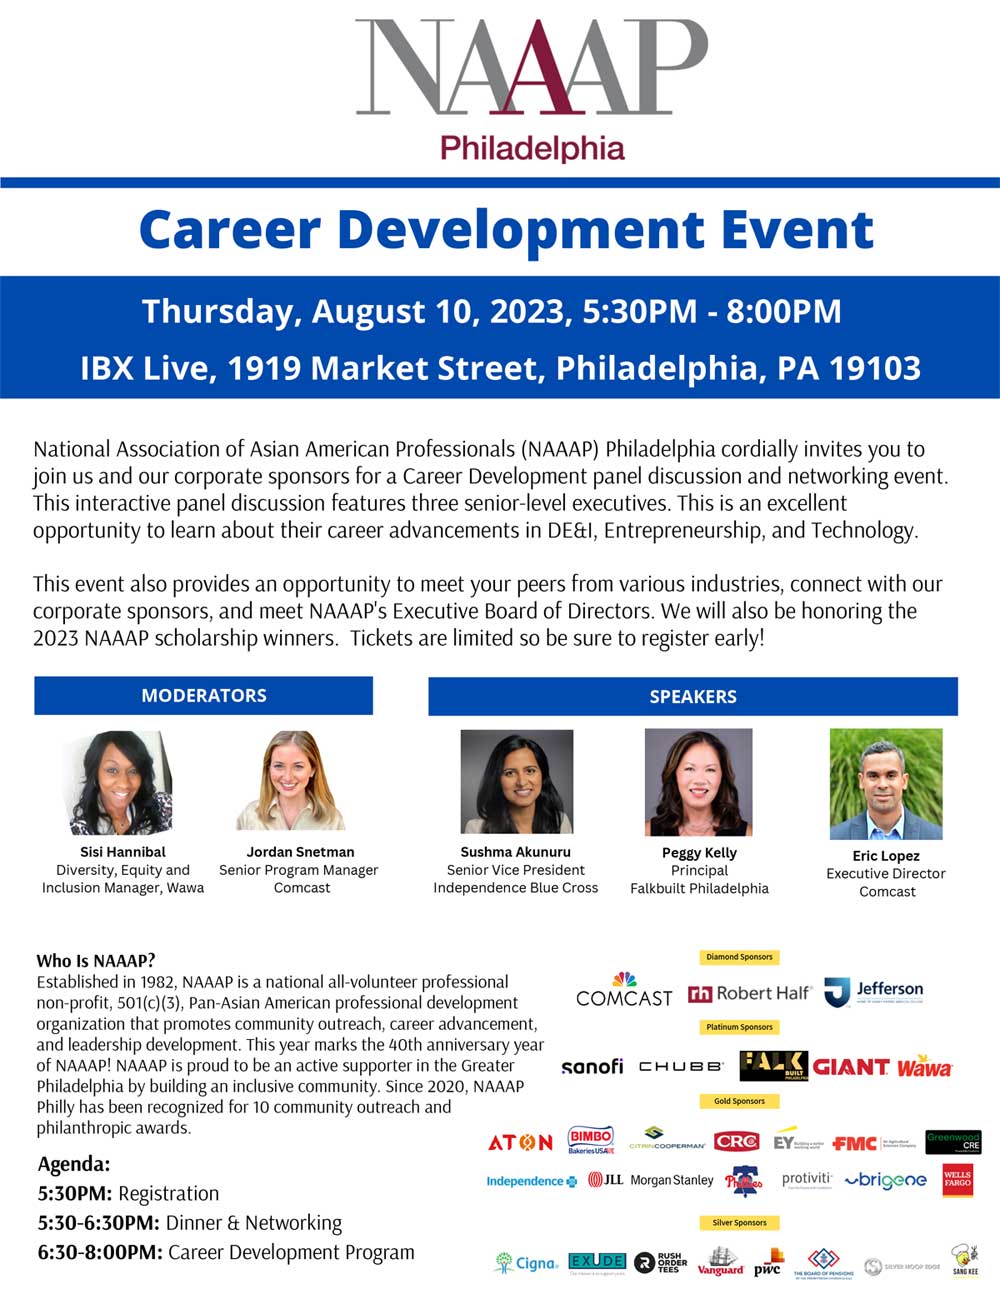 flyer for NAAAP Philadelphia career development event